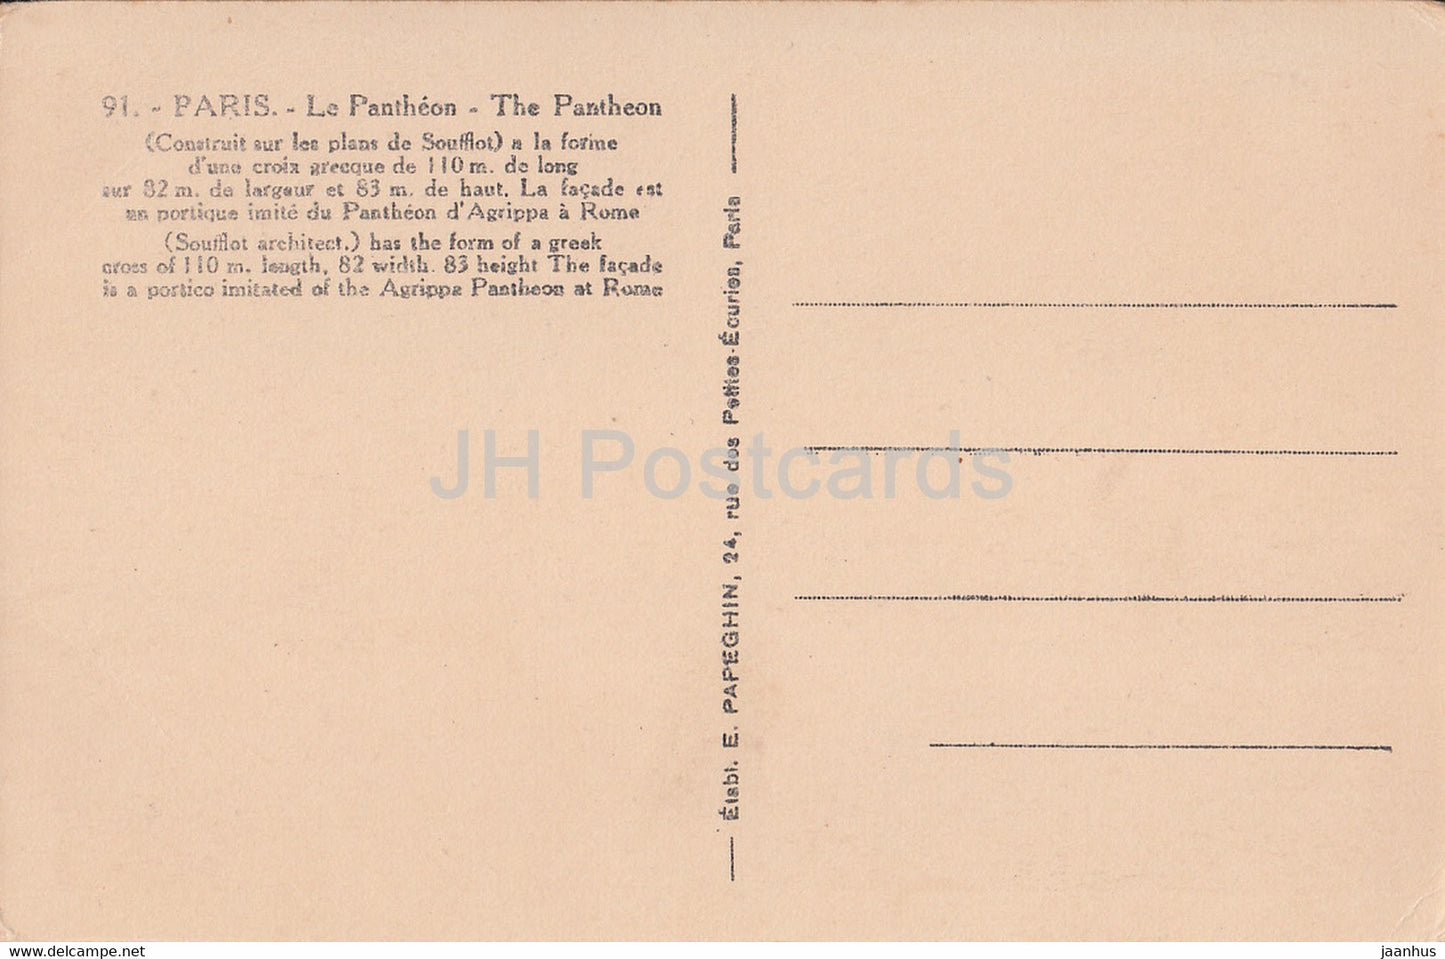 Paris - Le Panthéon - Le Panthéon - 91 - carte postale ancienne - France - inutilisée